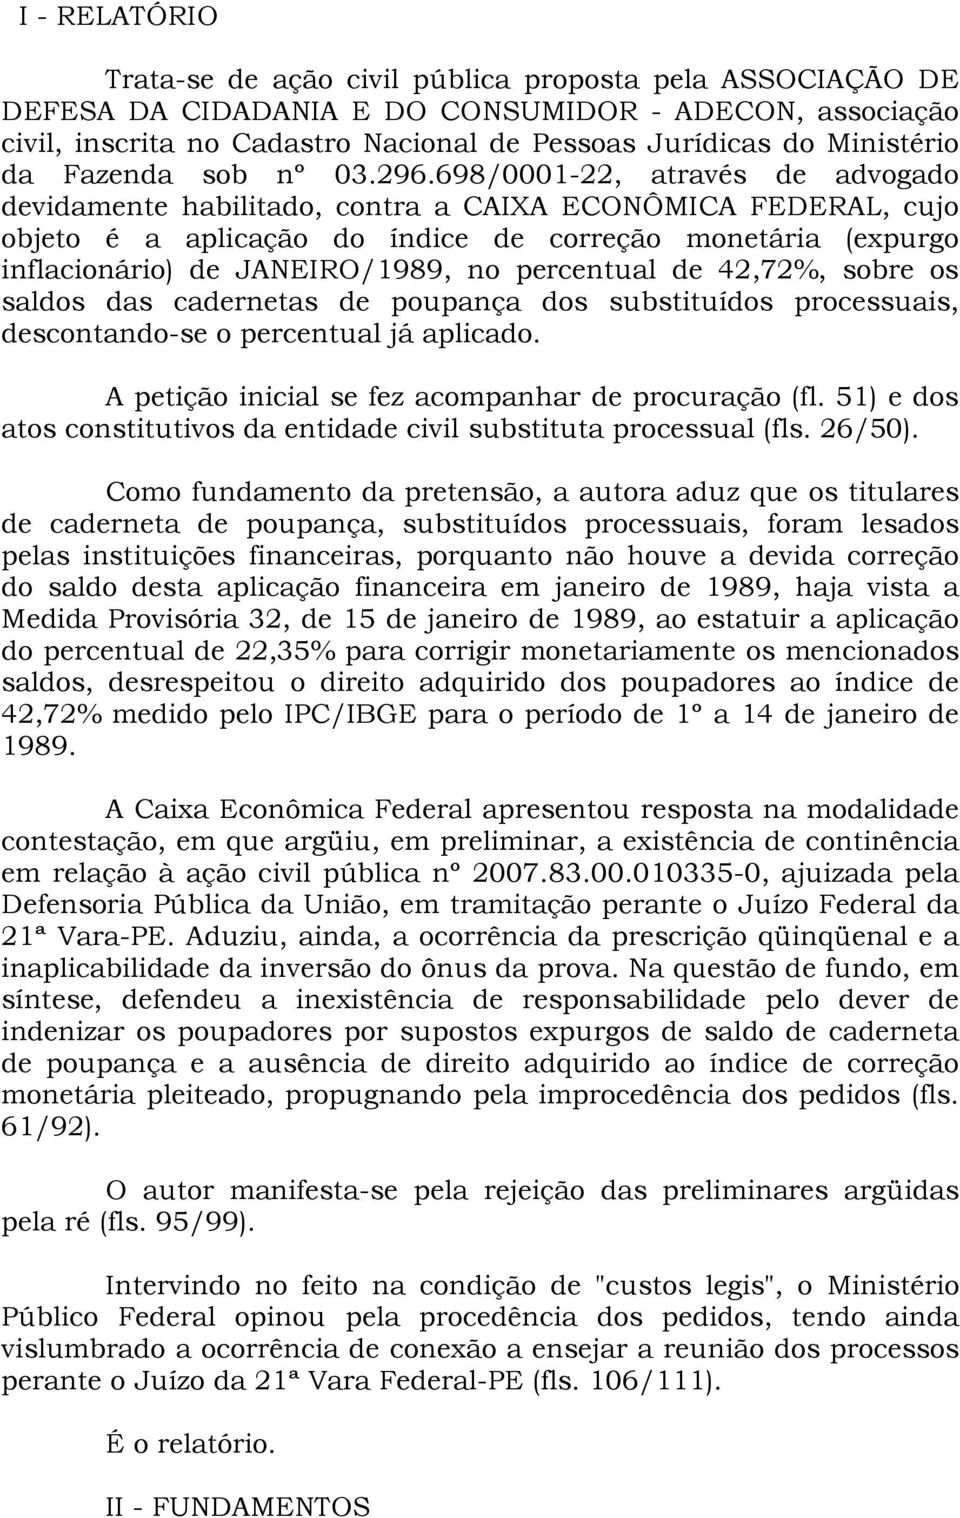 698/0001-22, através de advogado devidamente habilitado, contra a CAIXA ECONÔMICA FEDERAL, cujo objeto é a aplicação do índice de correção monetária (expurgo inflacionário) de JANEIRO/1989, no